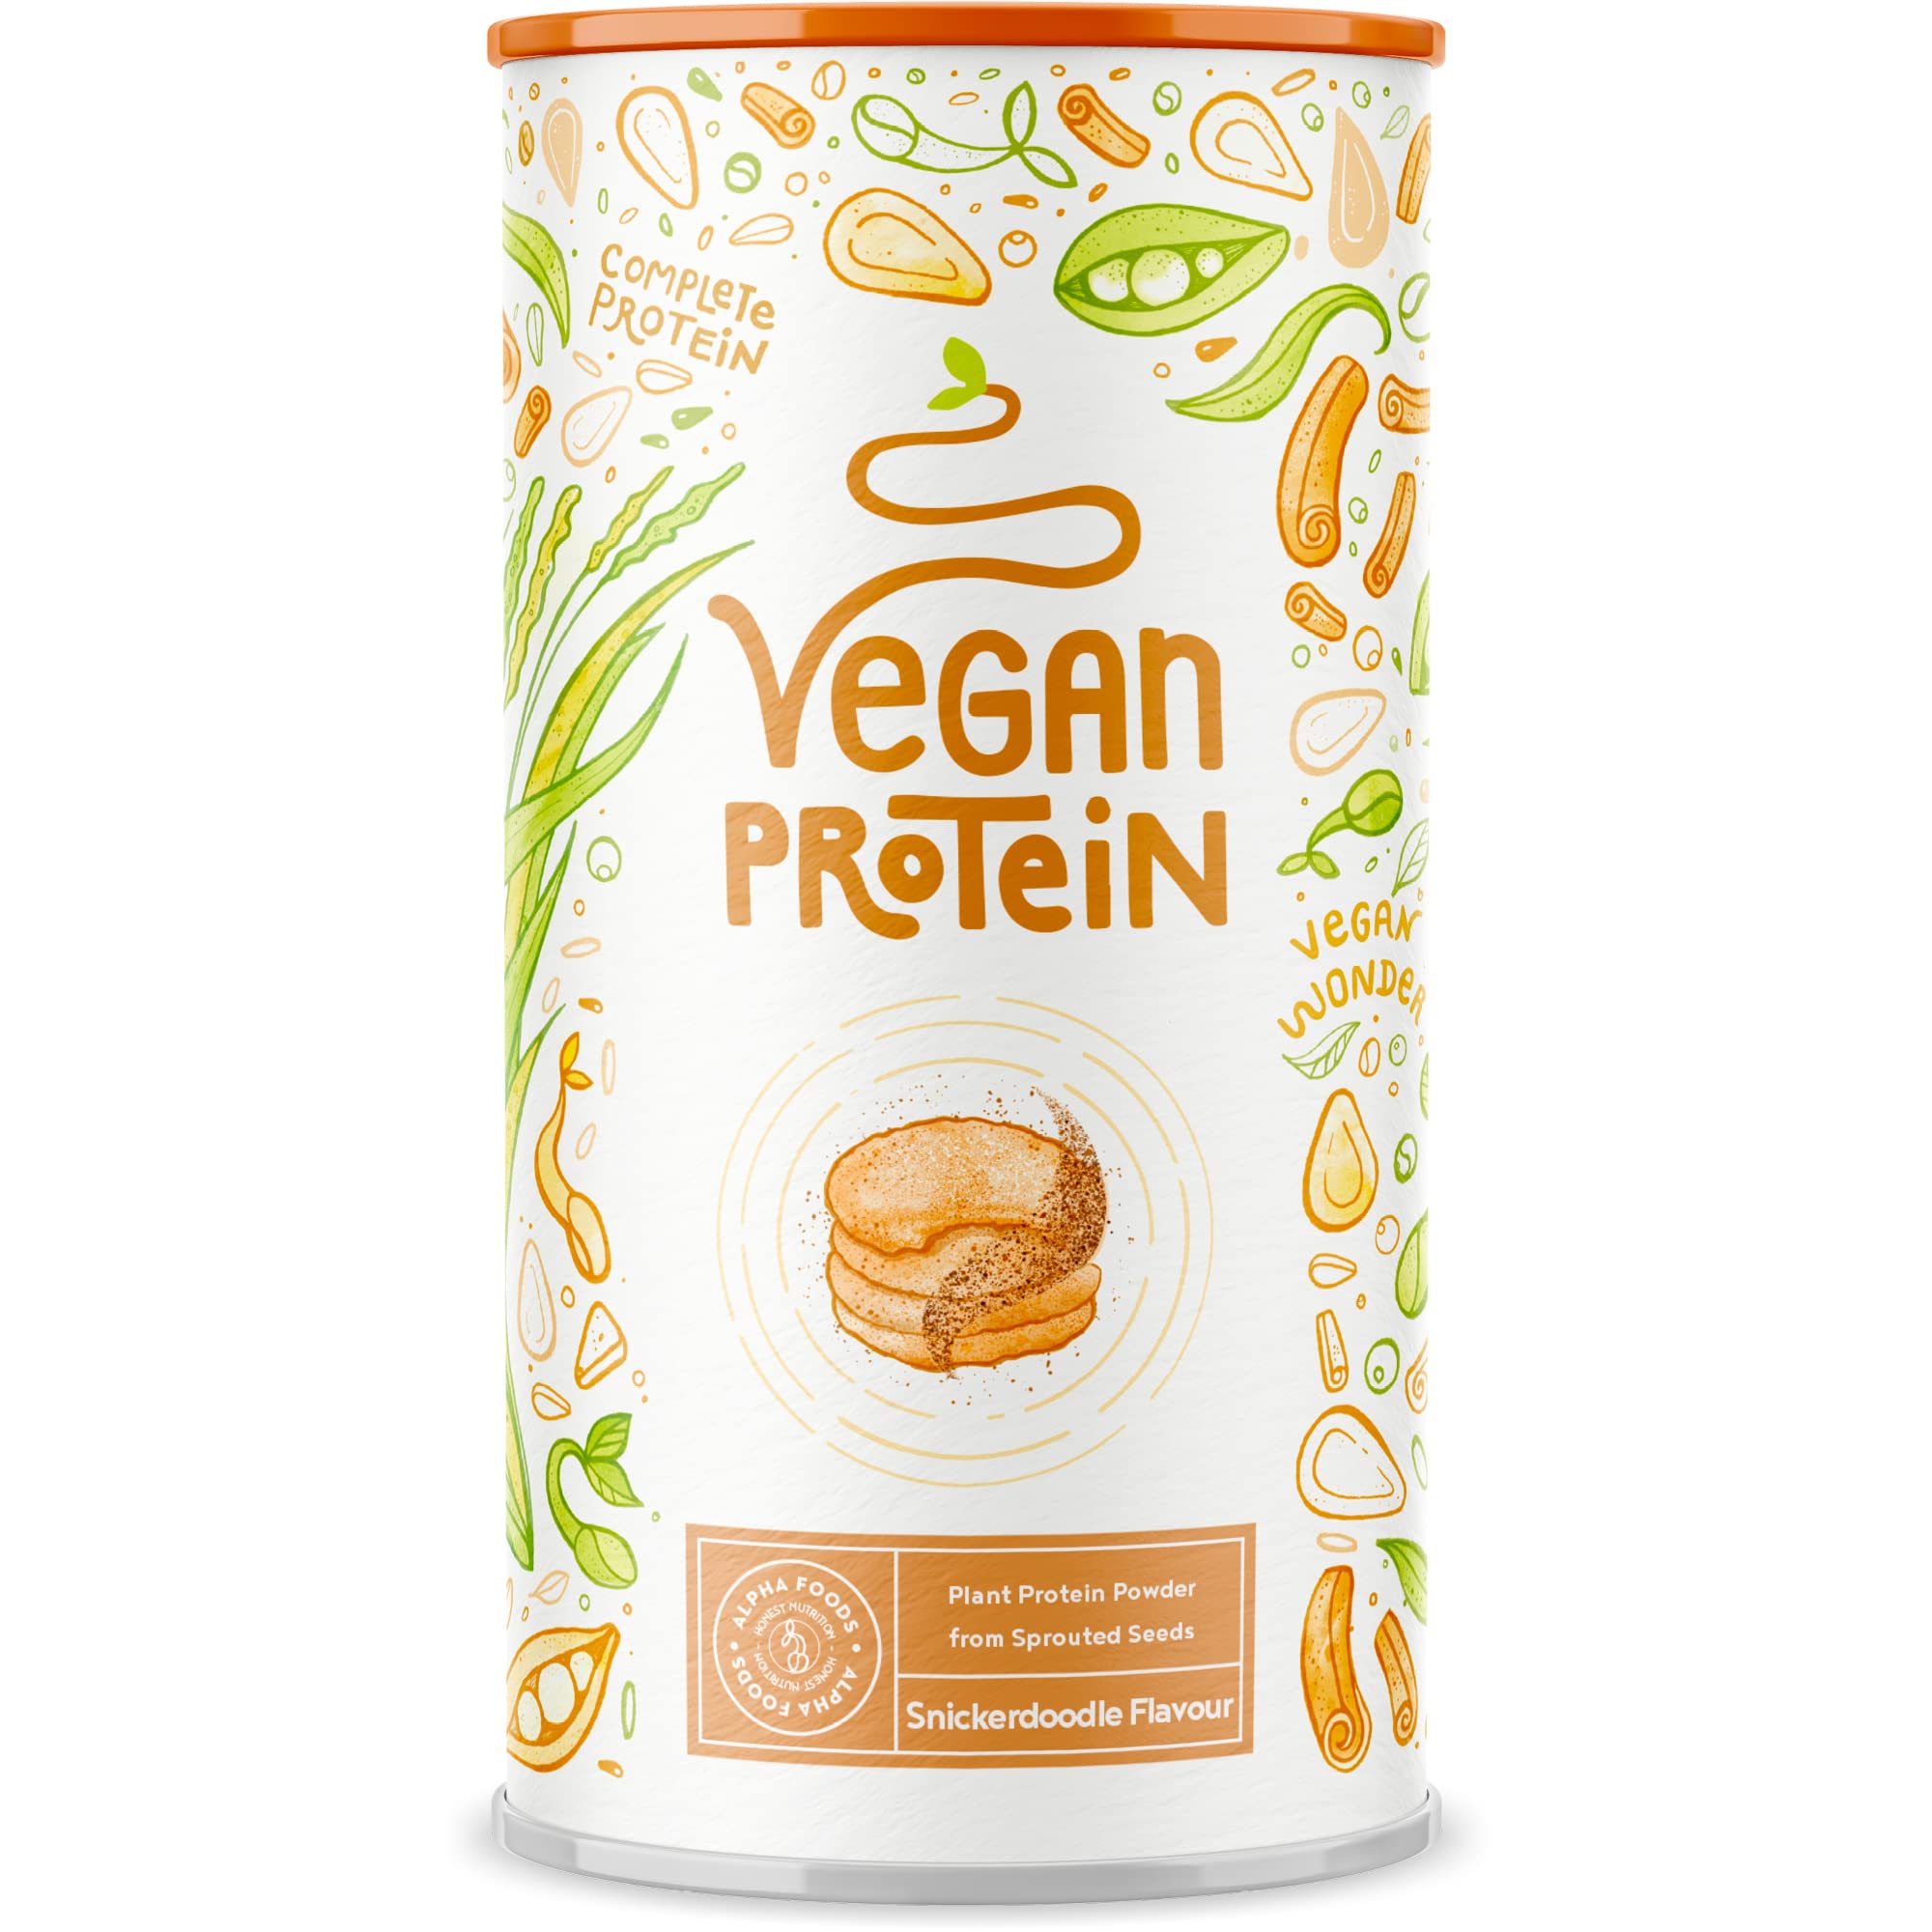 Vegan Protein - SNICKERDOODLE - Pflanzliches Proteinpulver aus gesprossten Reis, Erbsen, Sojabohnen, Leinsamen, Amaranth, Sonnenblumen- und Kürbiskernen - 600g Pulver